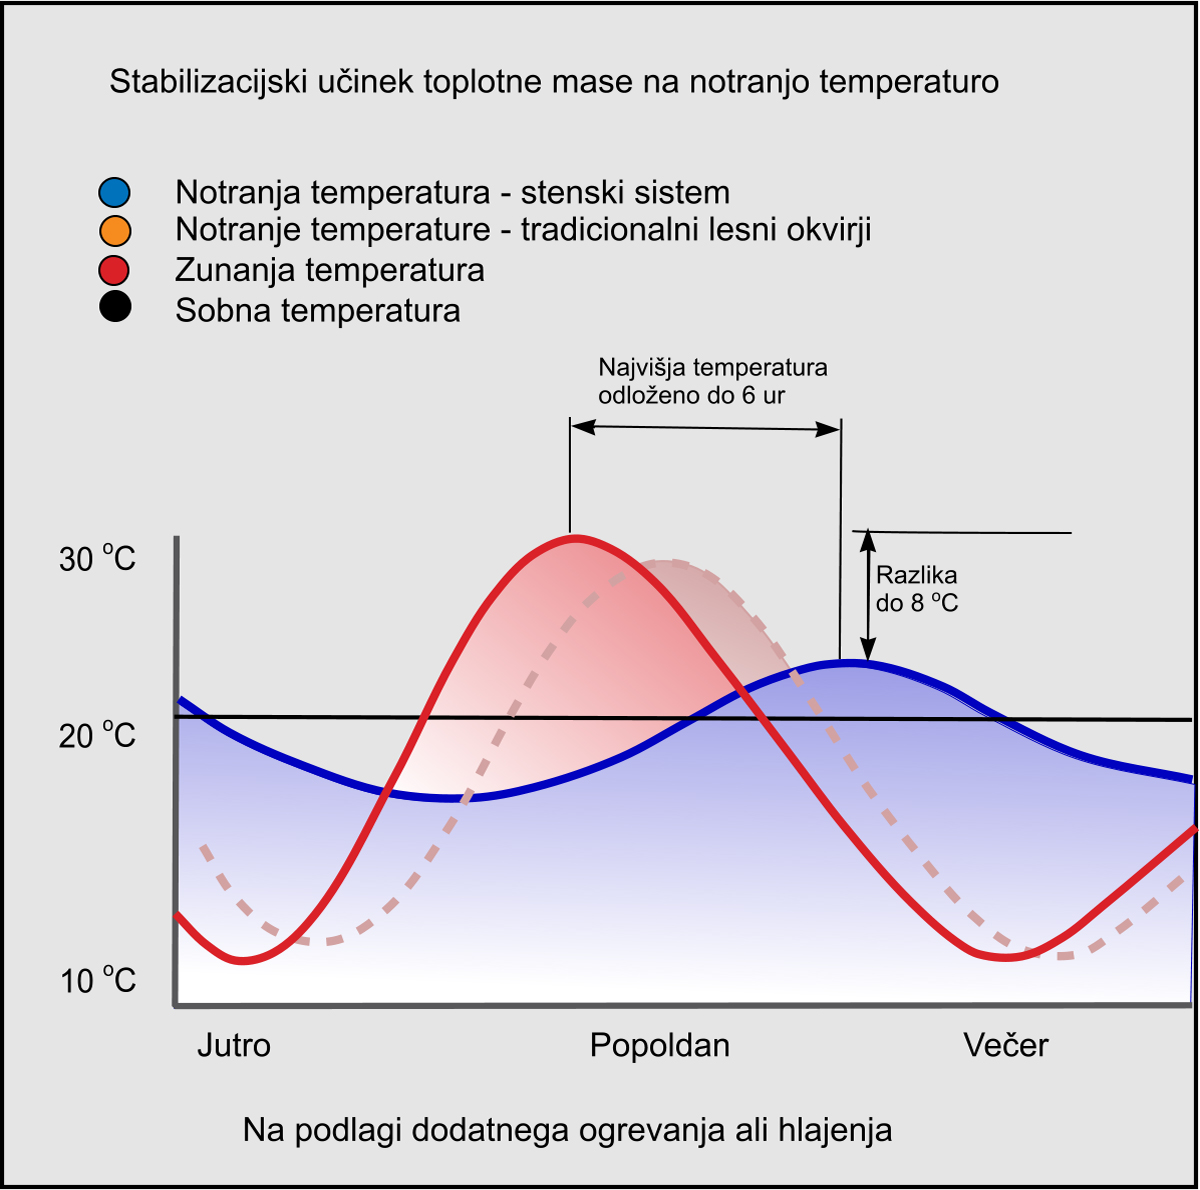 Stabilizacijski učinek toplotne mase na notranjo temperaturo